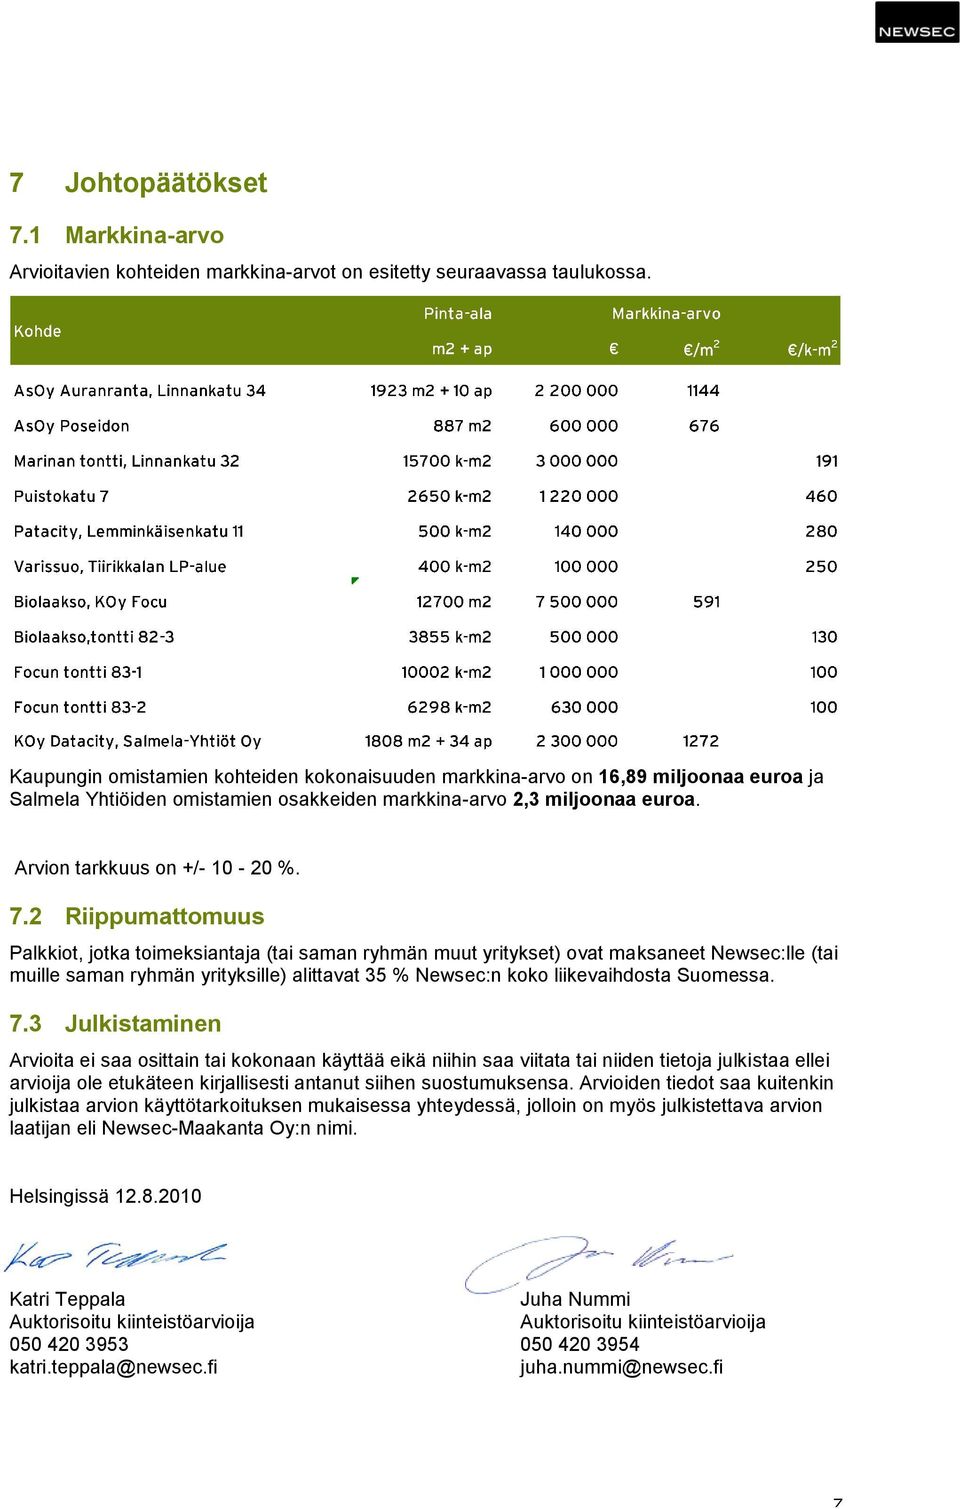 2 Riippumattomuus Palkkiot, jotka toimeksiantaja (tai saman ryhmän muut yritykset) ovat maksaneet Newsec:lle (tai muille saman ryhmän yrityksille) alittavat 35 % Newsec:n koko liikevaihdosta Suomessa.